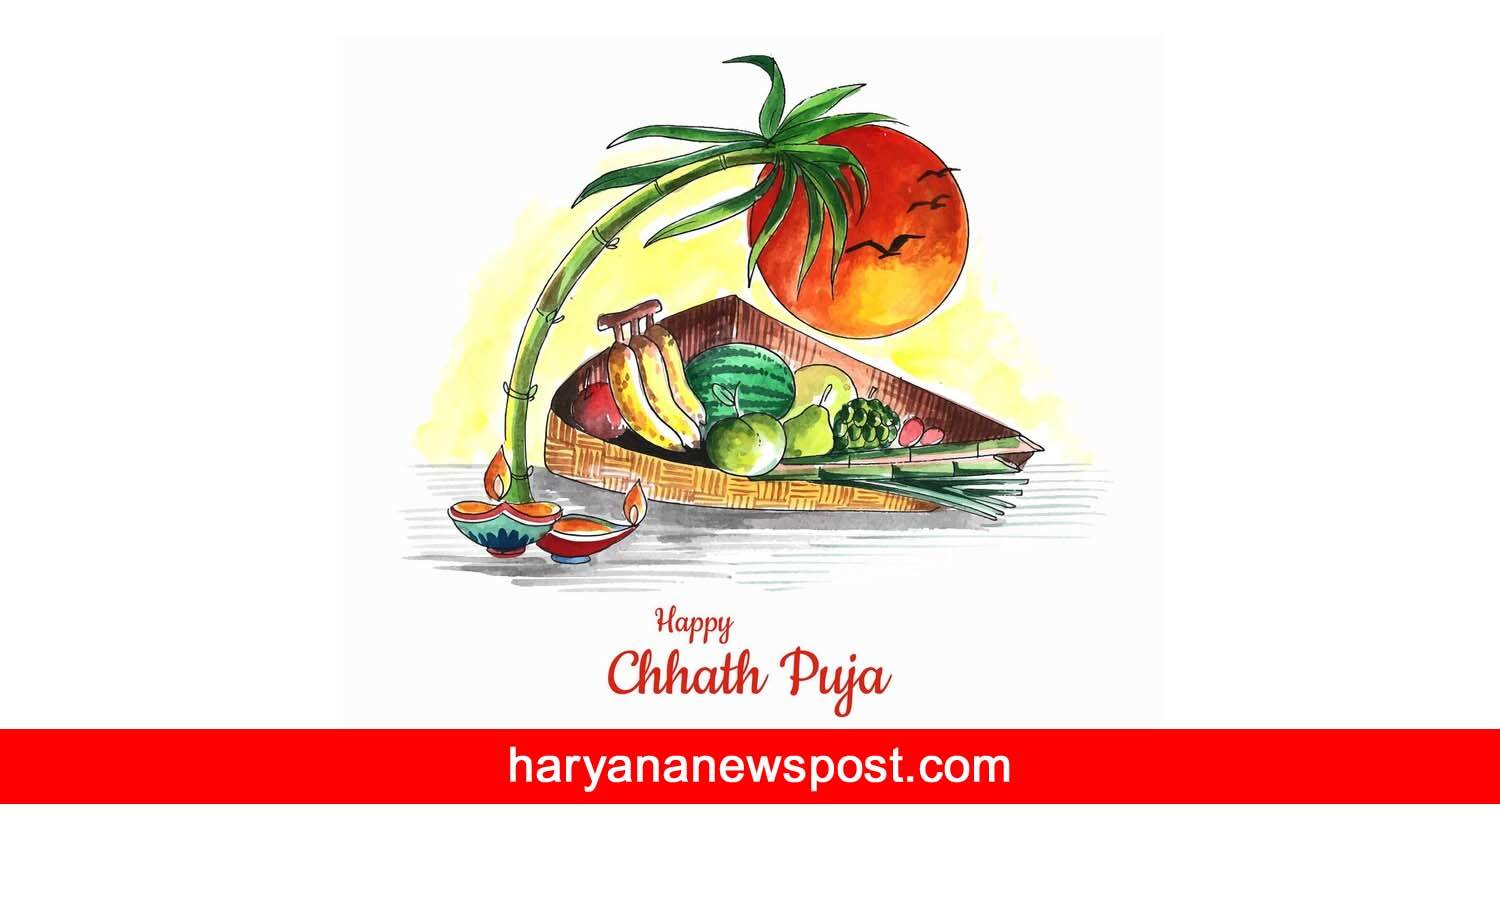 Chhath Puja invitation message in Hindi 